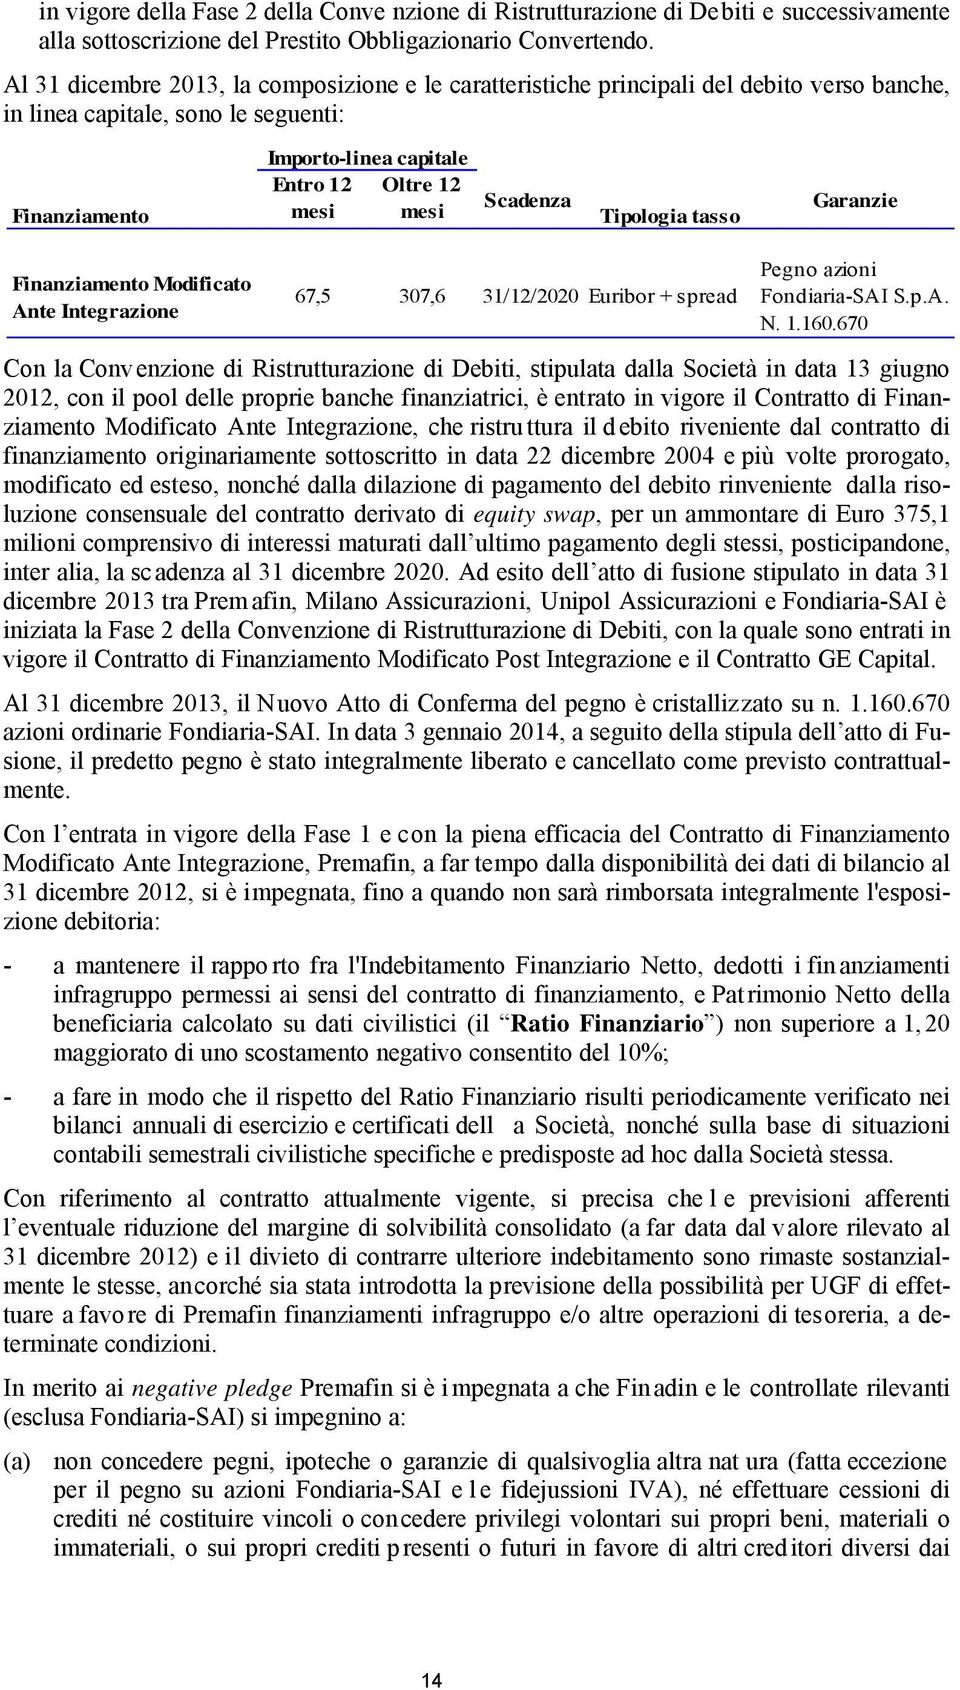 Scadenza Tipologia tasso Garanzie Finanziamento Modificato Ante Integrazione 67,5 307,6 31/12/2020 Euribor + spread Pegno azioni Fondiaria-SAI S.p.A. N. 1.160.